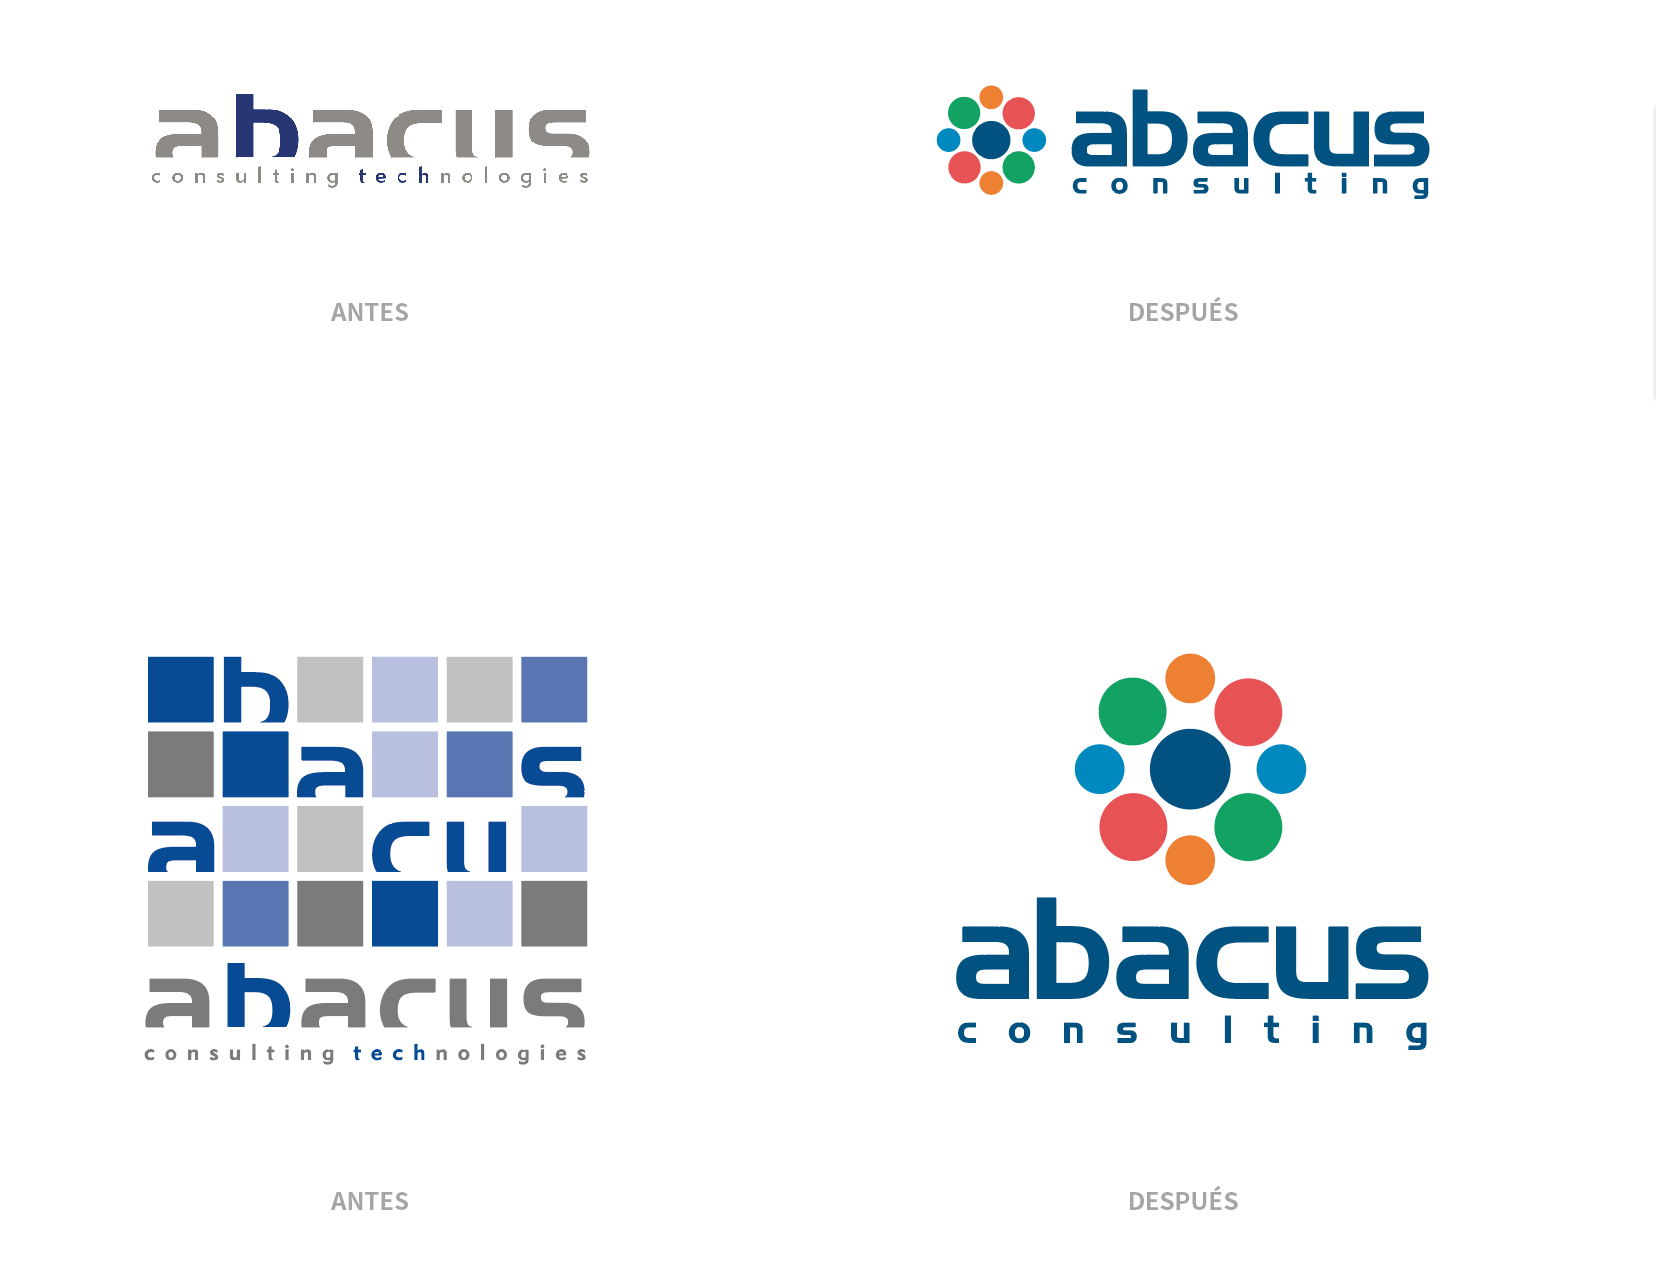 Logotipo de Abacus Consulting Technologies, antes y después de su rediseño.